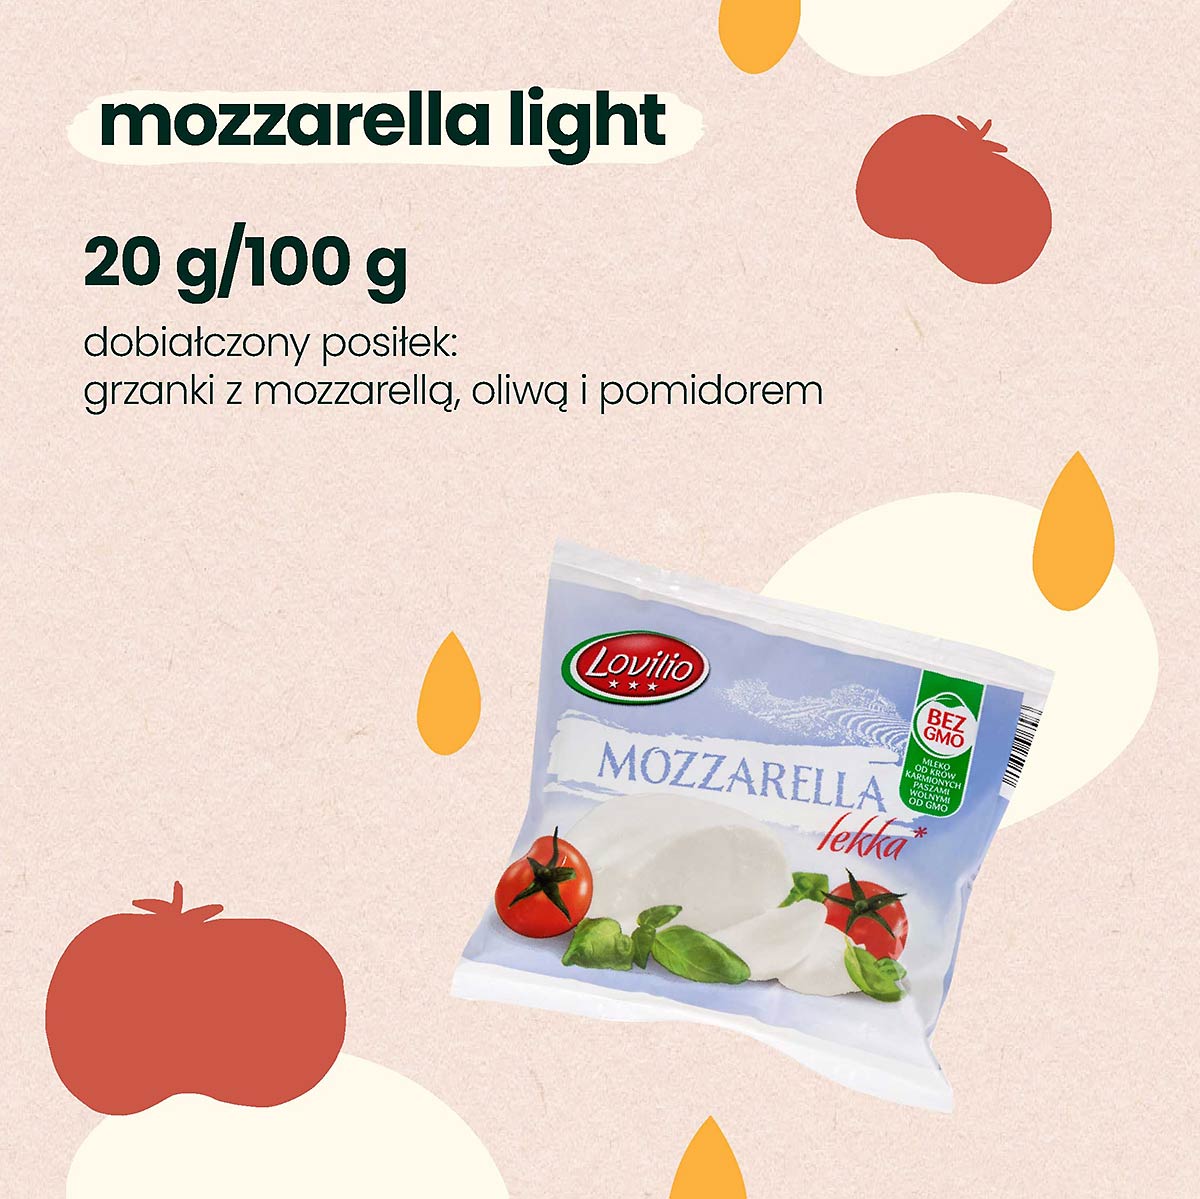 mozzarella light - źródło białka w posiłku